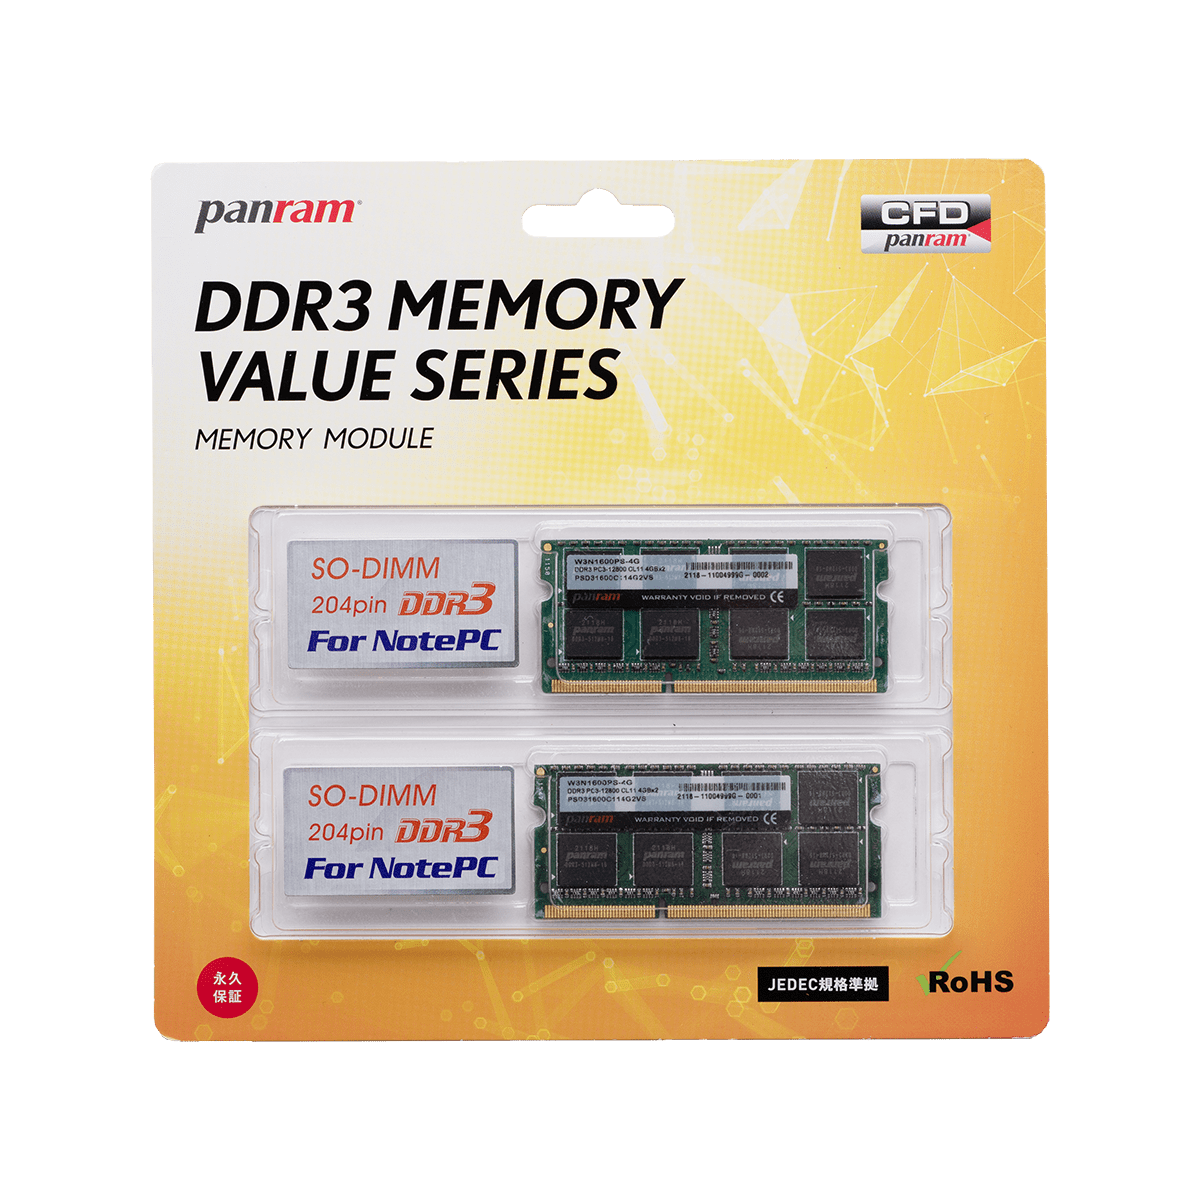 デスクトップ用 DDR4-2400 | PCパーツメーカーの総合サプライヤーCFD